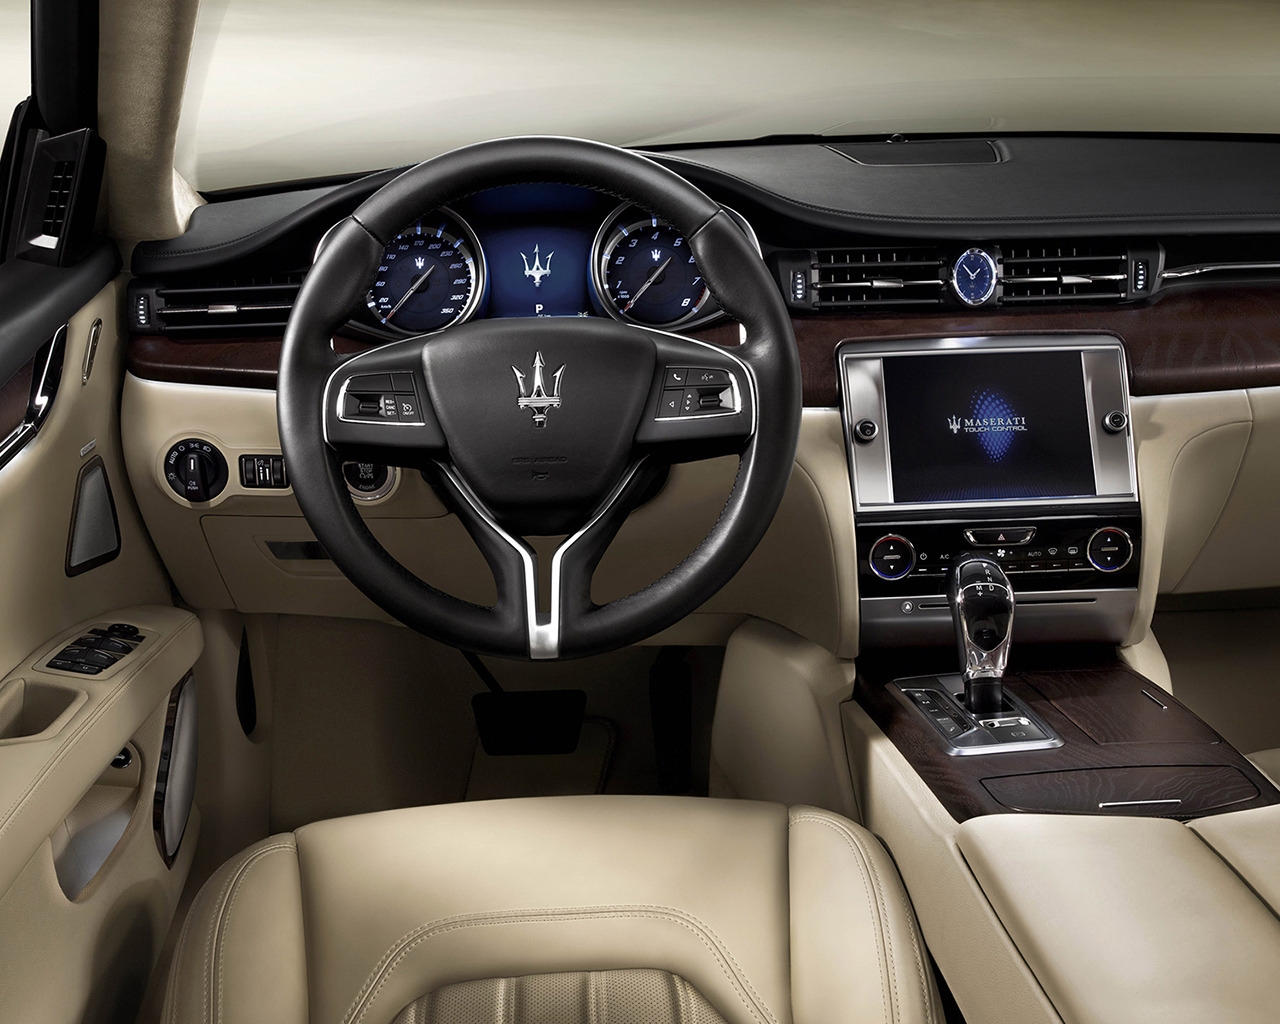 Interior of Maserati Quattroporte for 1280 x 1024 resolution